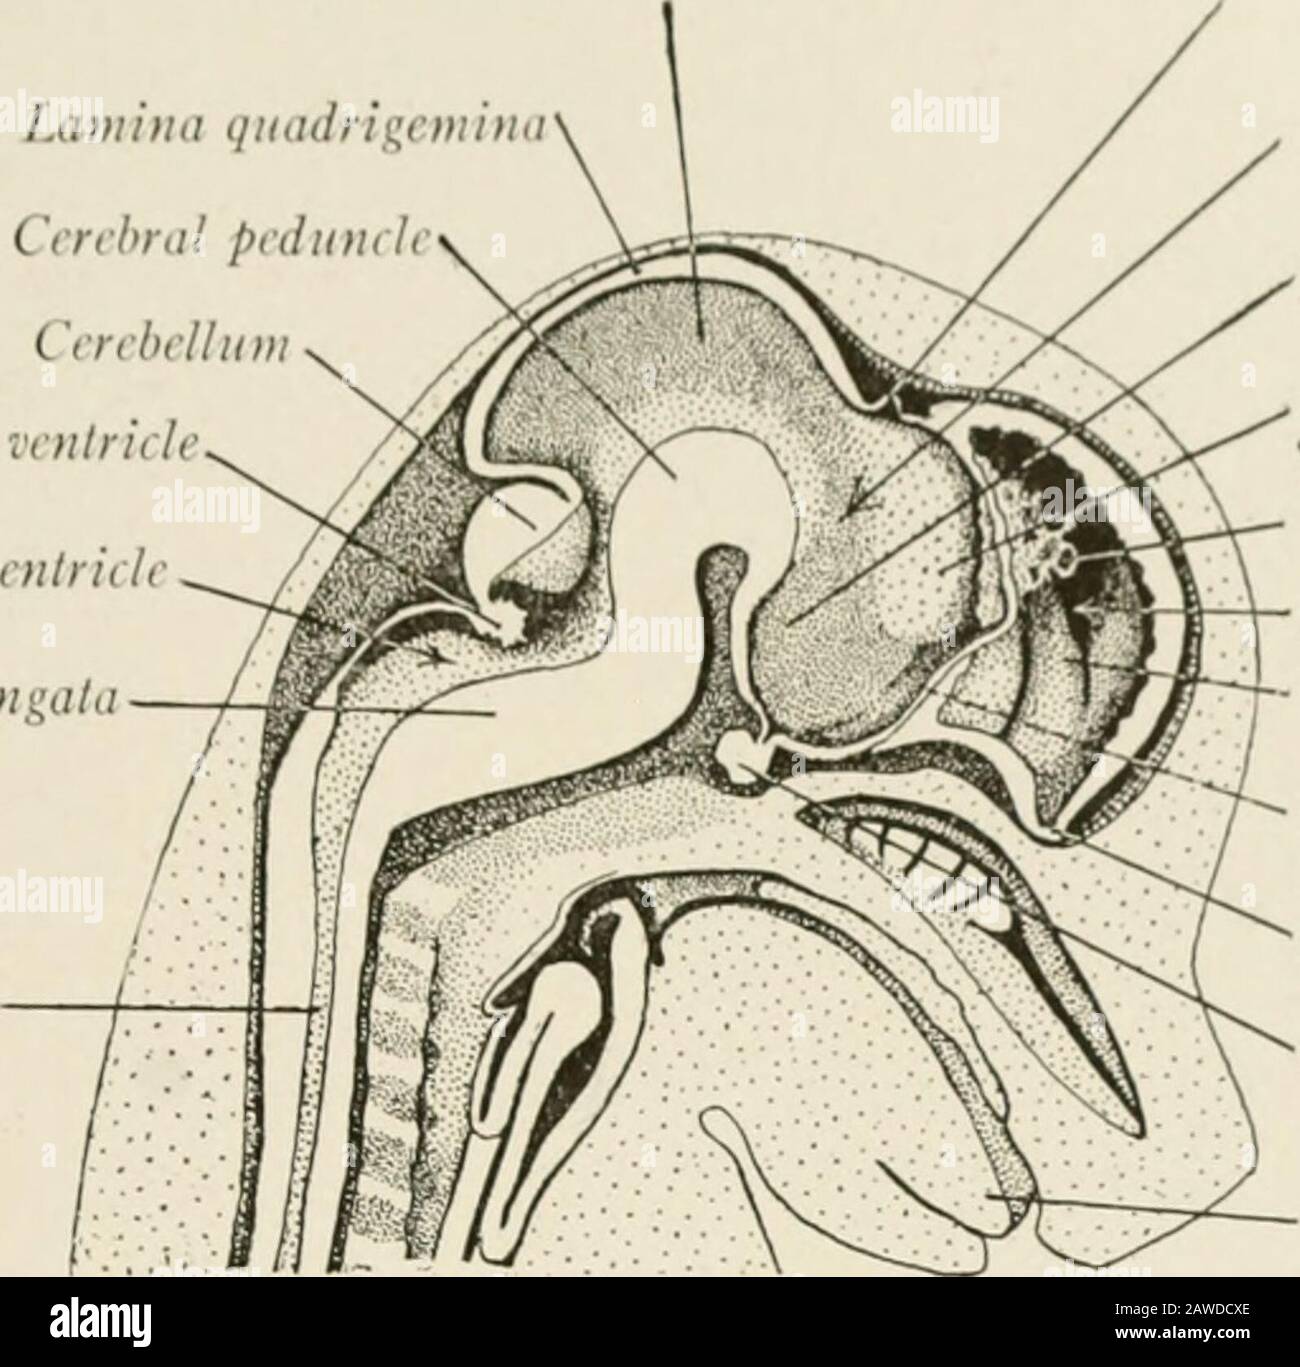 Die Anatomie des Nervensystems, vom Standpunkt der Entwicklung und Funktion. AIN DES FETALEN SCHWEINS 21. Schneiden Sie mit einem Schweinembryo von etwa 35 mm mit einem scharfen Rasiermesser von der Haut und einer kleinen Menge des darunter liegenden Gewebes auf beiden Seiten des Kopfes ab. Bei einem Carefu1 SPALTET DANN EIN LABORUMRISS DES NIV-Schlaganfalls DIE Probe in der Medianebene in Längsrichtung. I HIS bietet zwei Präparationen für die Dissektion, die verwendet werden sollten l&gt;V zwei Studenten. (ERT orales Aquädukt Lamina quadragetninaCerebral pedunchCerebelluChorioid Plexus des vierten ventru lntriile Hypothalamus Thalamus Chorioid Stockfoto